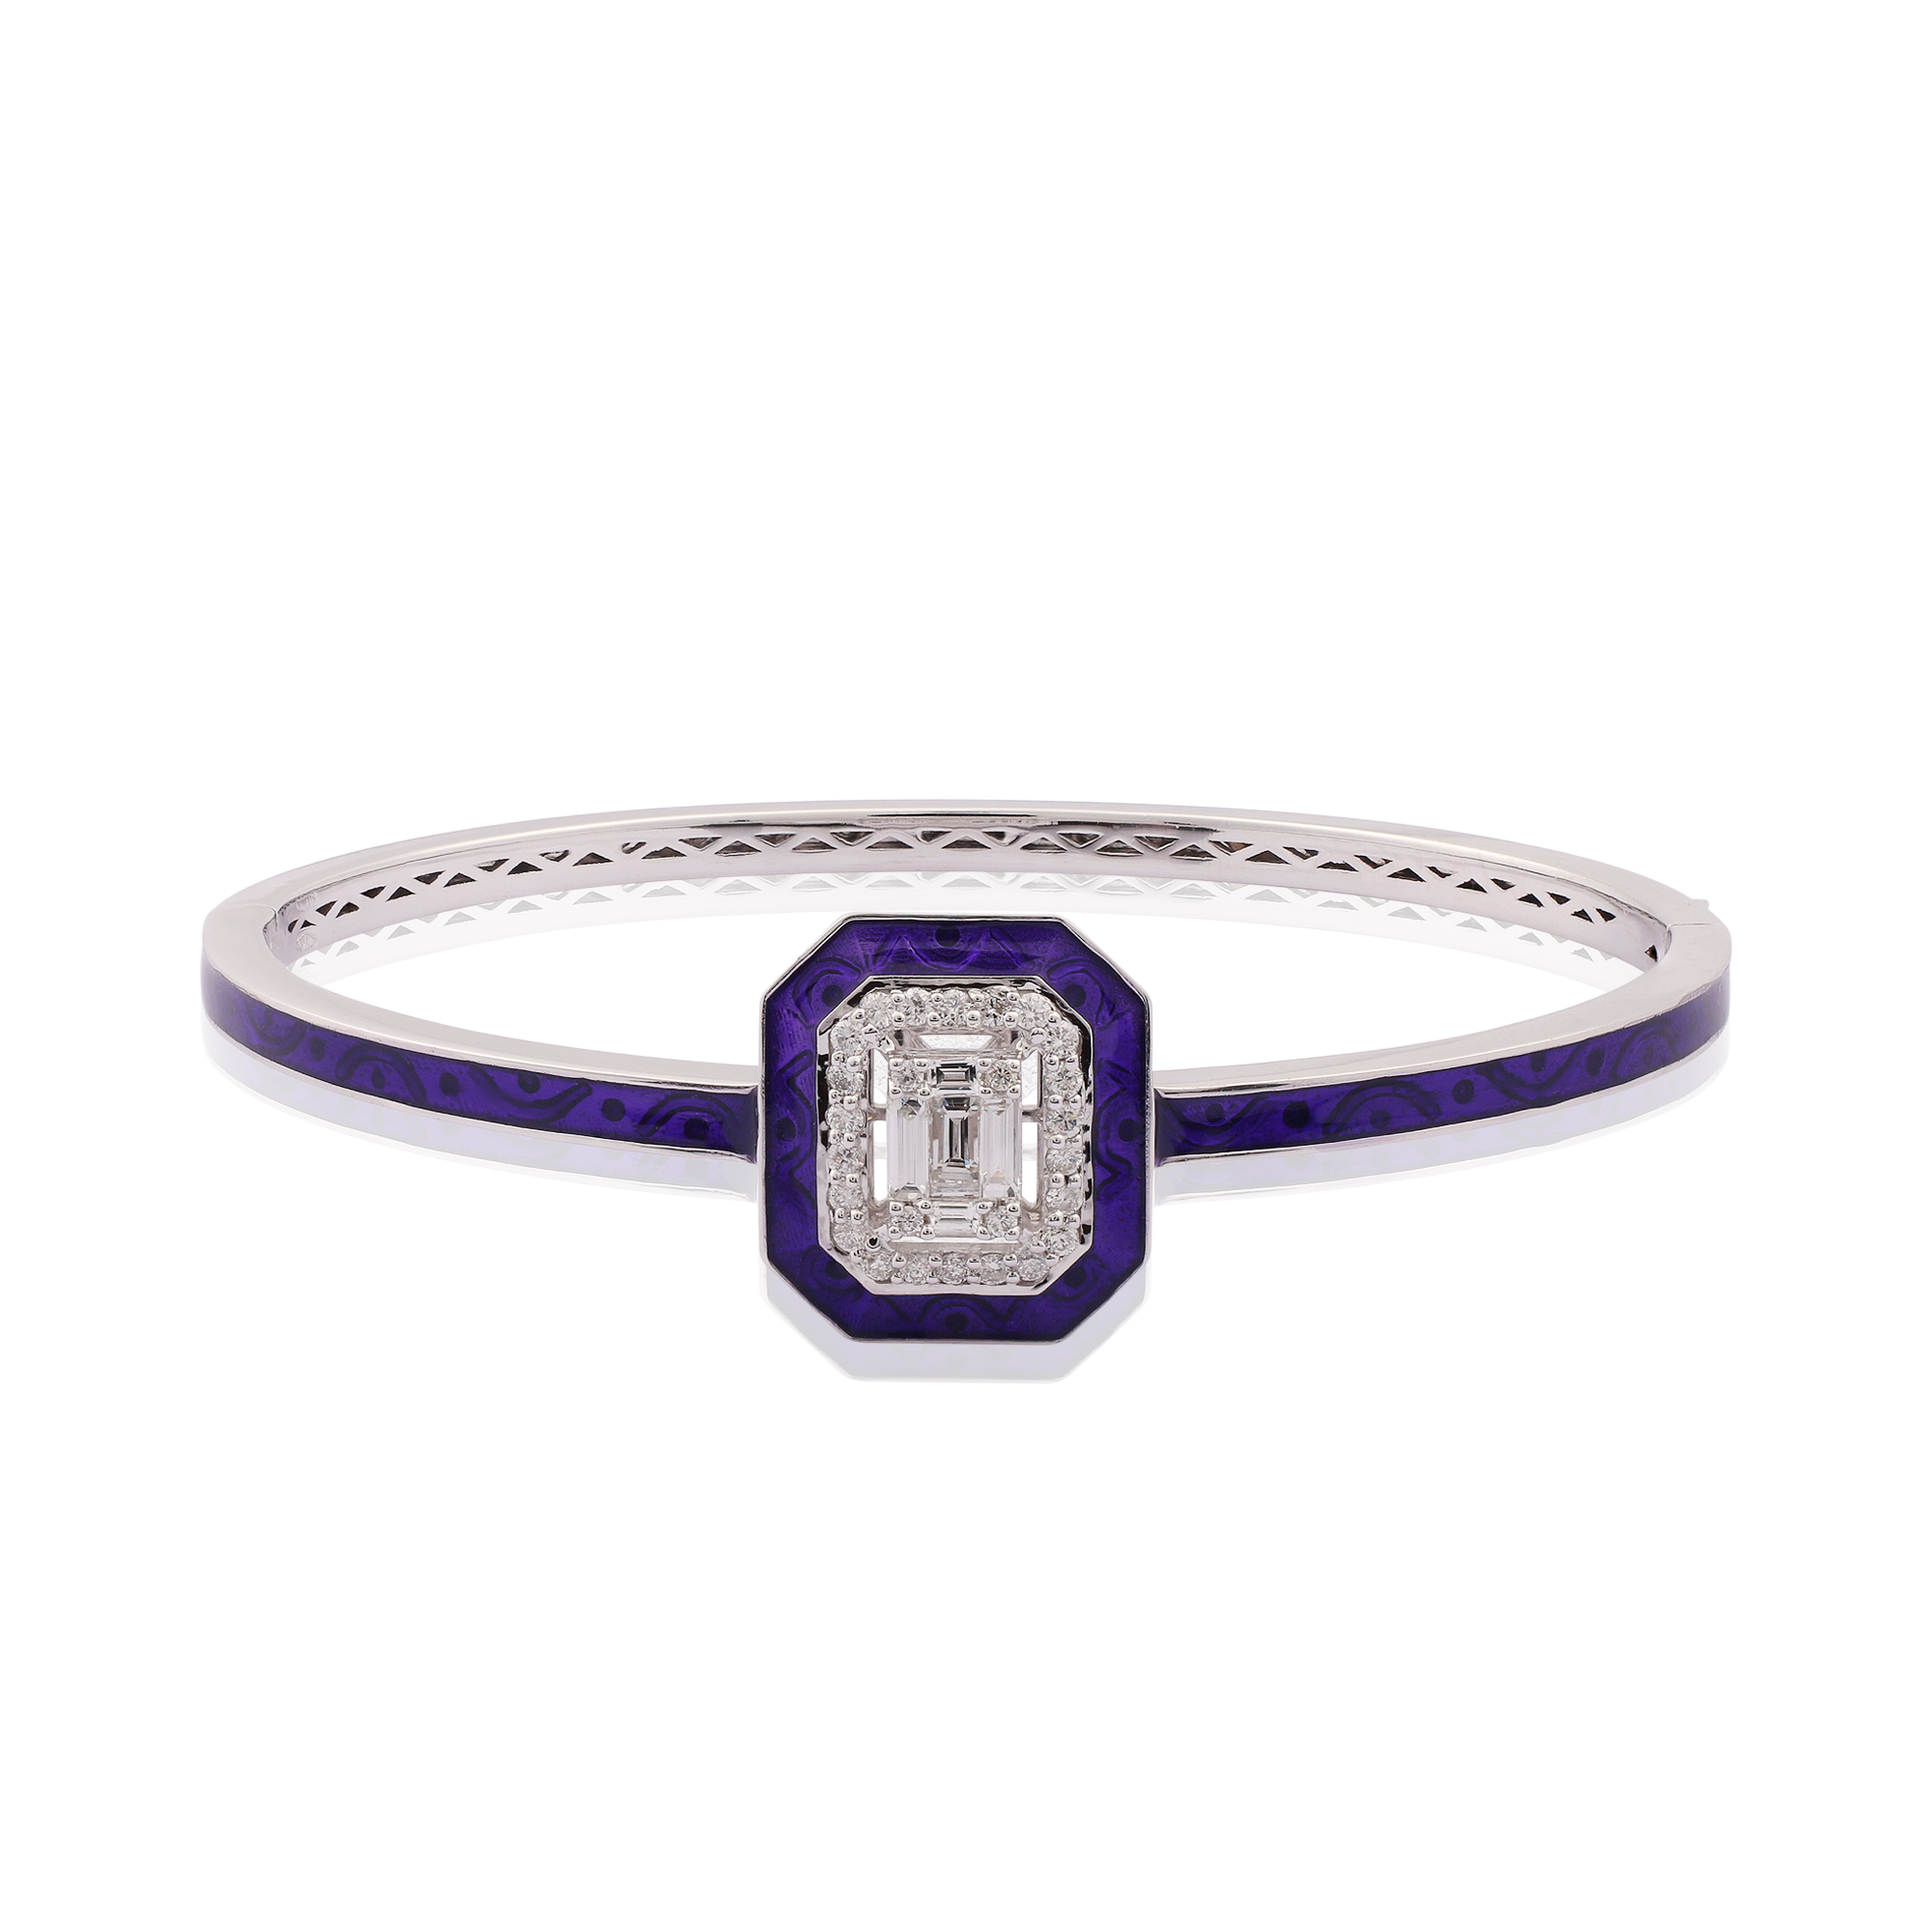 Cloisonné Collection Bracelet B0741-T2